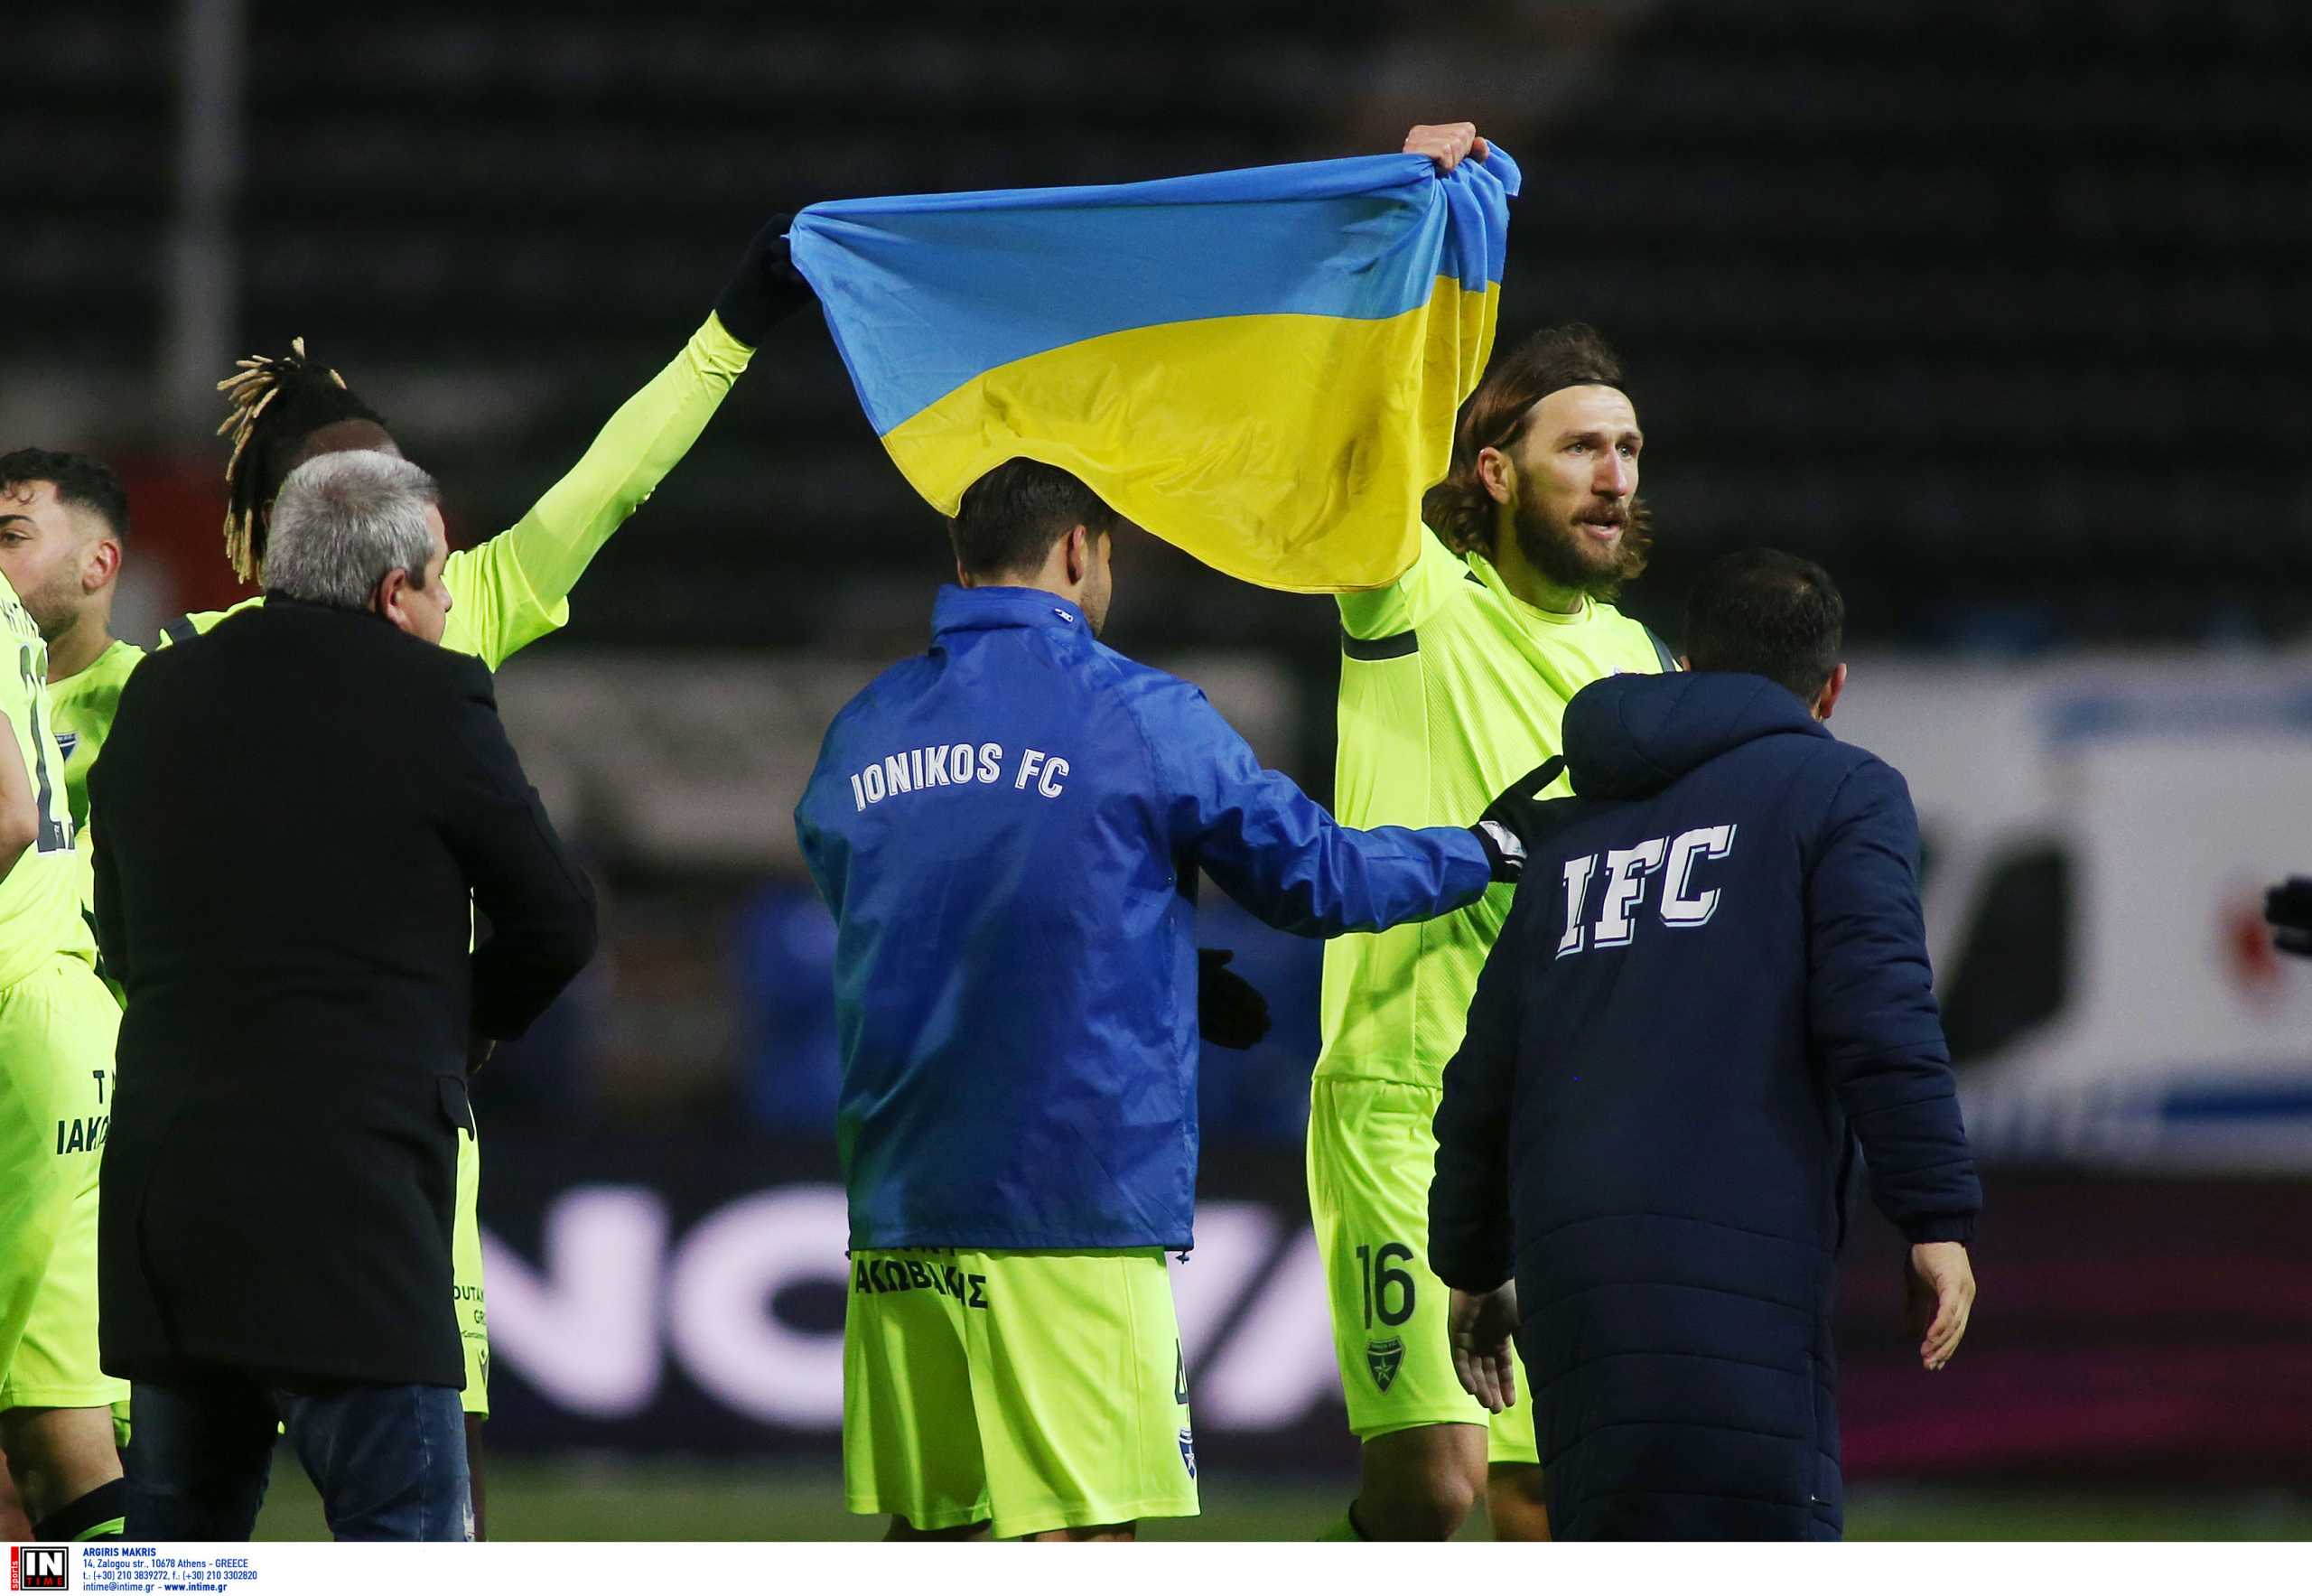 ΠΑΟΚ – Ιωνικός: Ο Ντμίτρο Τσιγκρίνσκι σήκωσε ψηλά την ουκρανική σημαία στο 1-1 και η Τούμπα χειροκρότησε